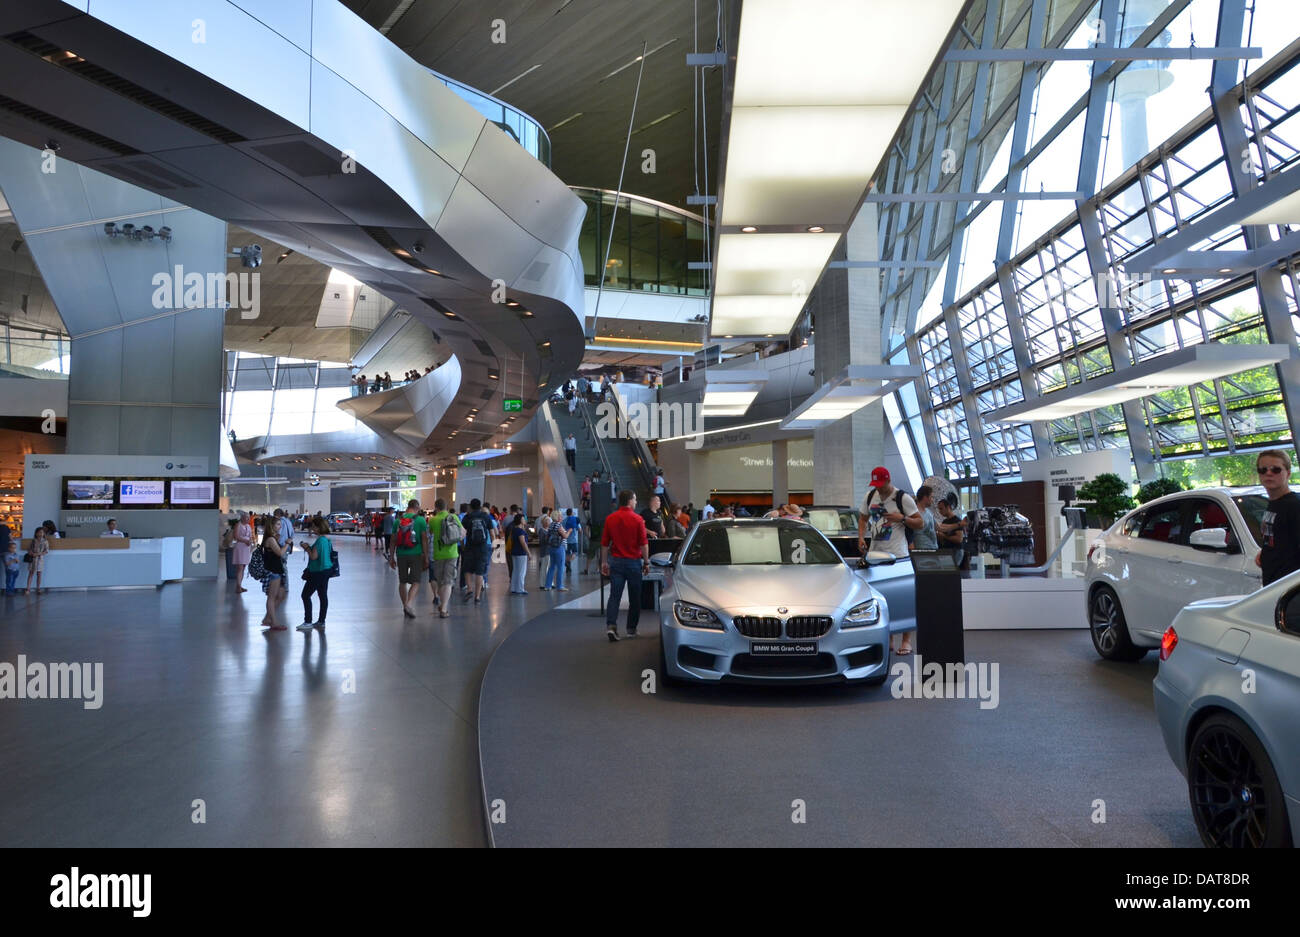 BMW Welt BMW Welt fantastischer futuristische Architektur! München, Bayern, Deutschland Stockfoto